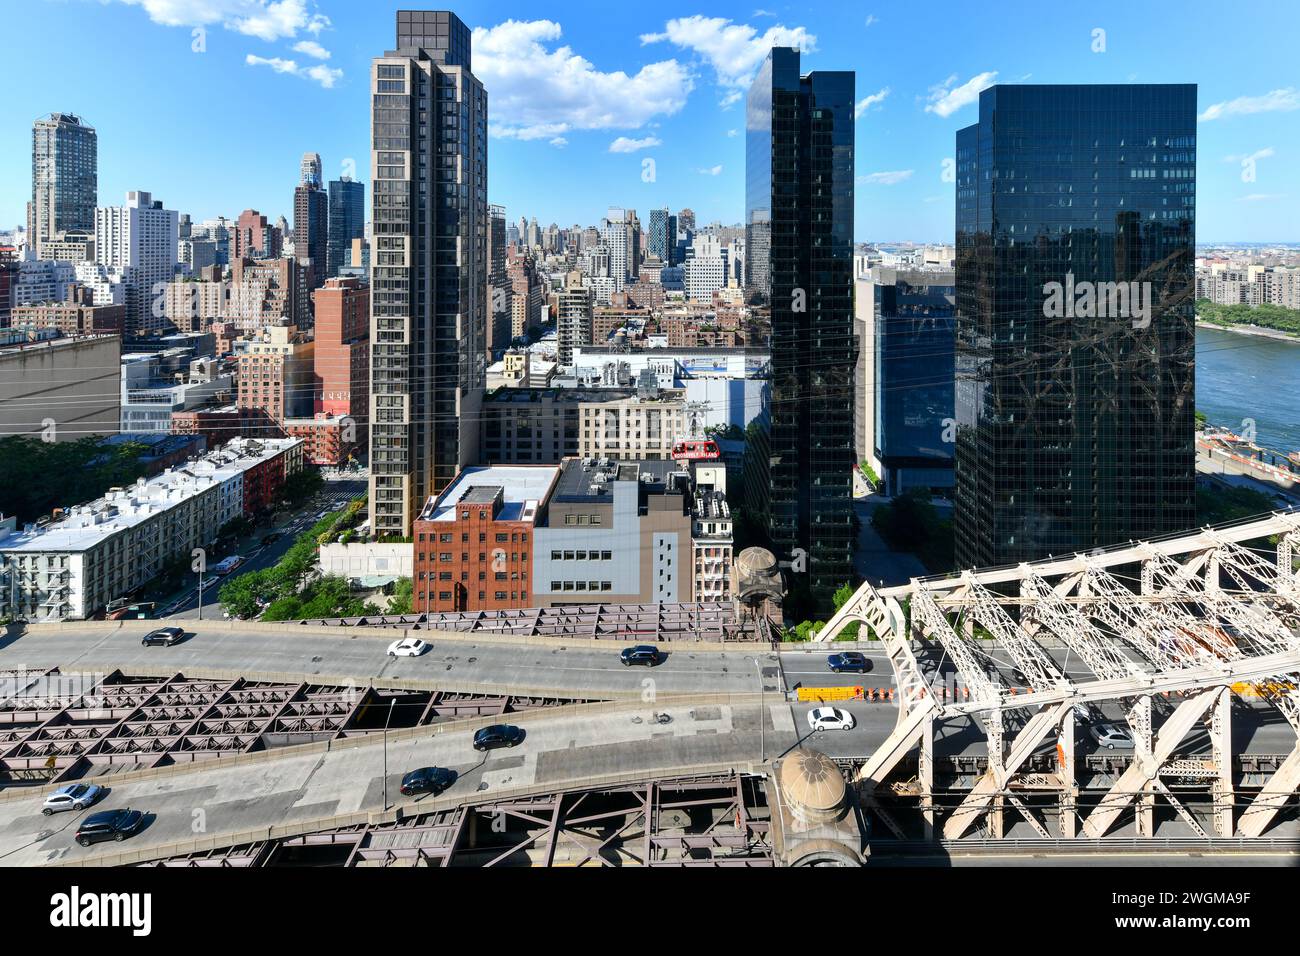 Vue sur le paysage urbain de Midtown East à Manhattan, en regardant vers le nord le long du pont de la 59e rue et du tramway de Roosevelt Island. Banque D'Images